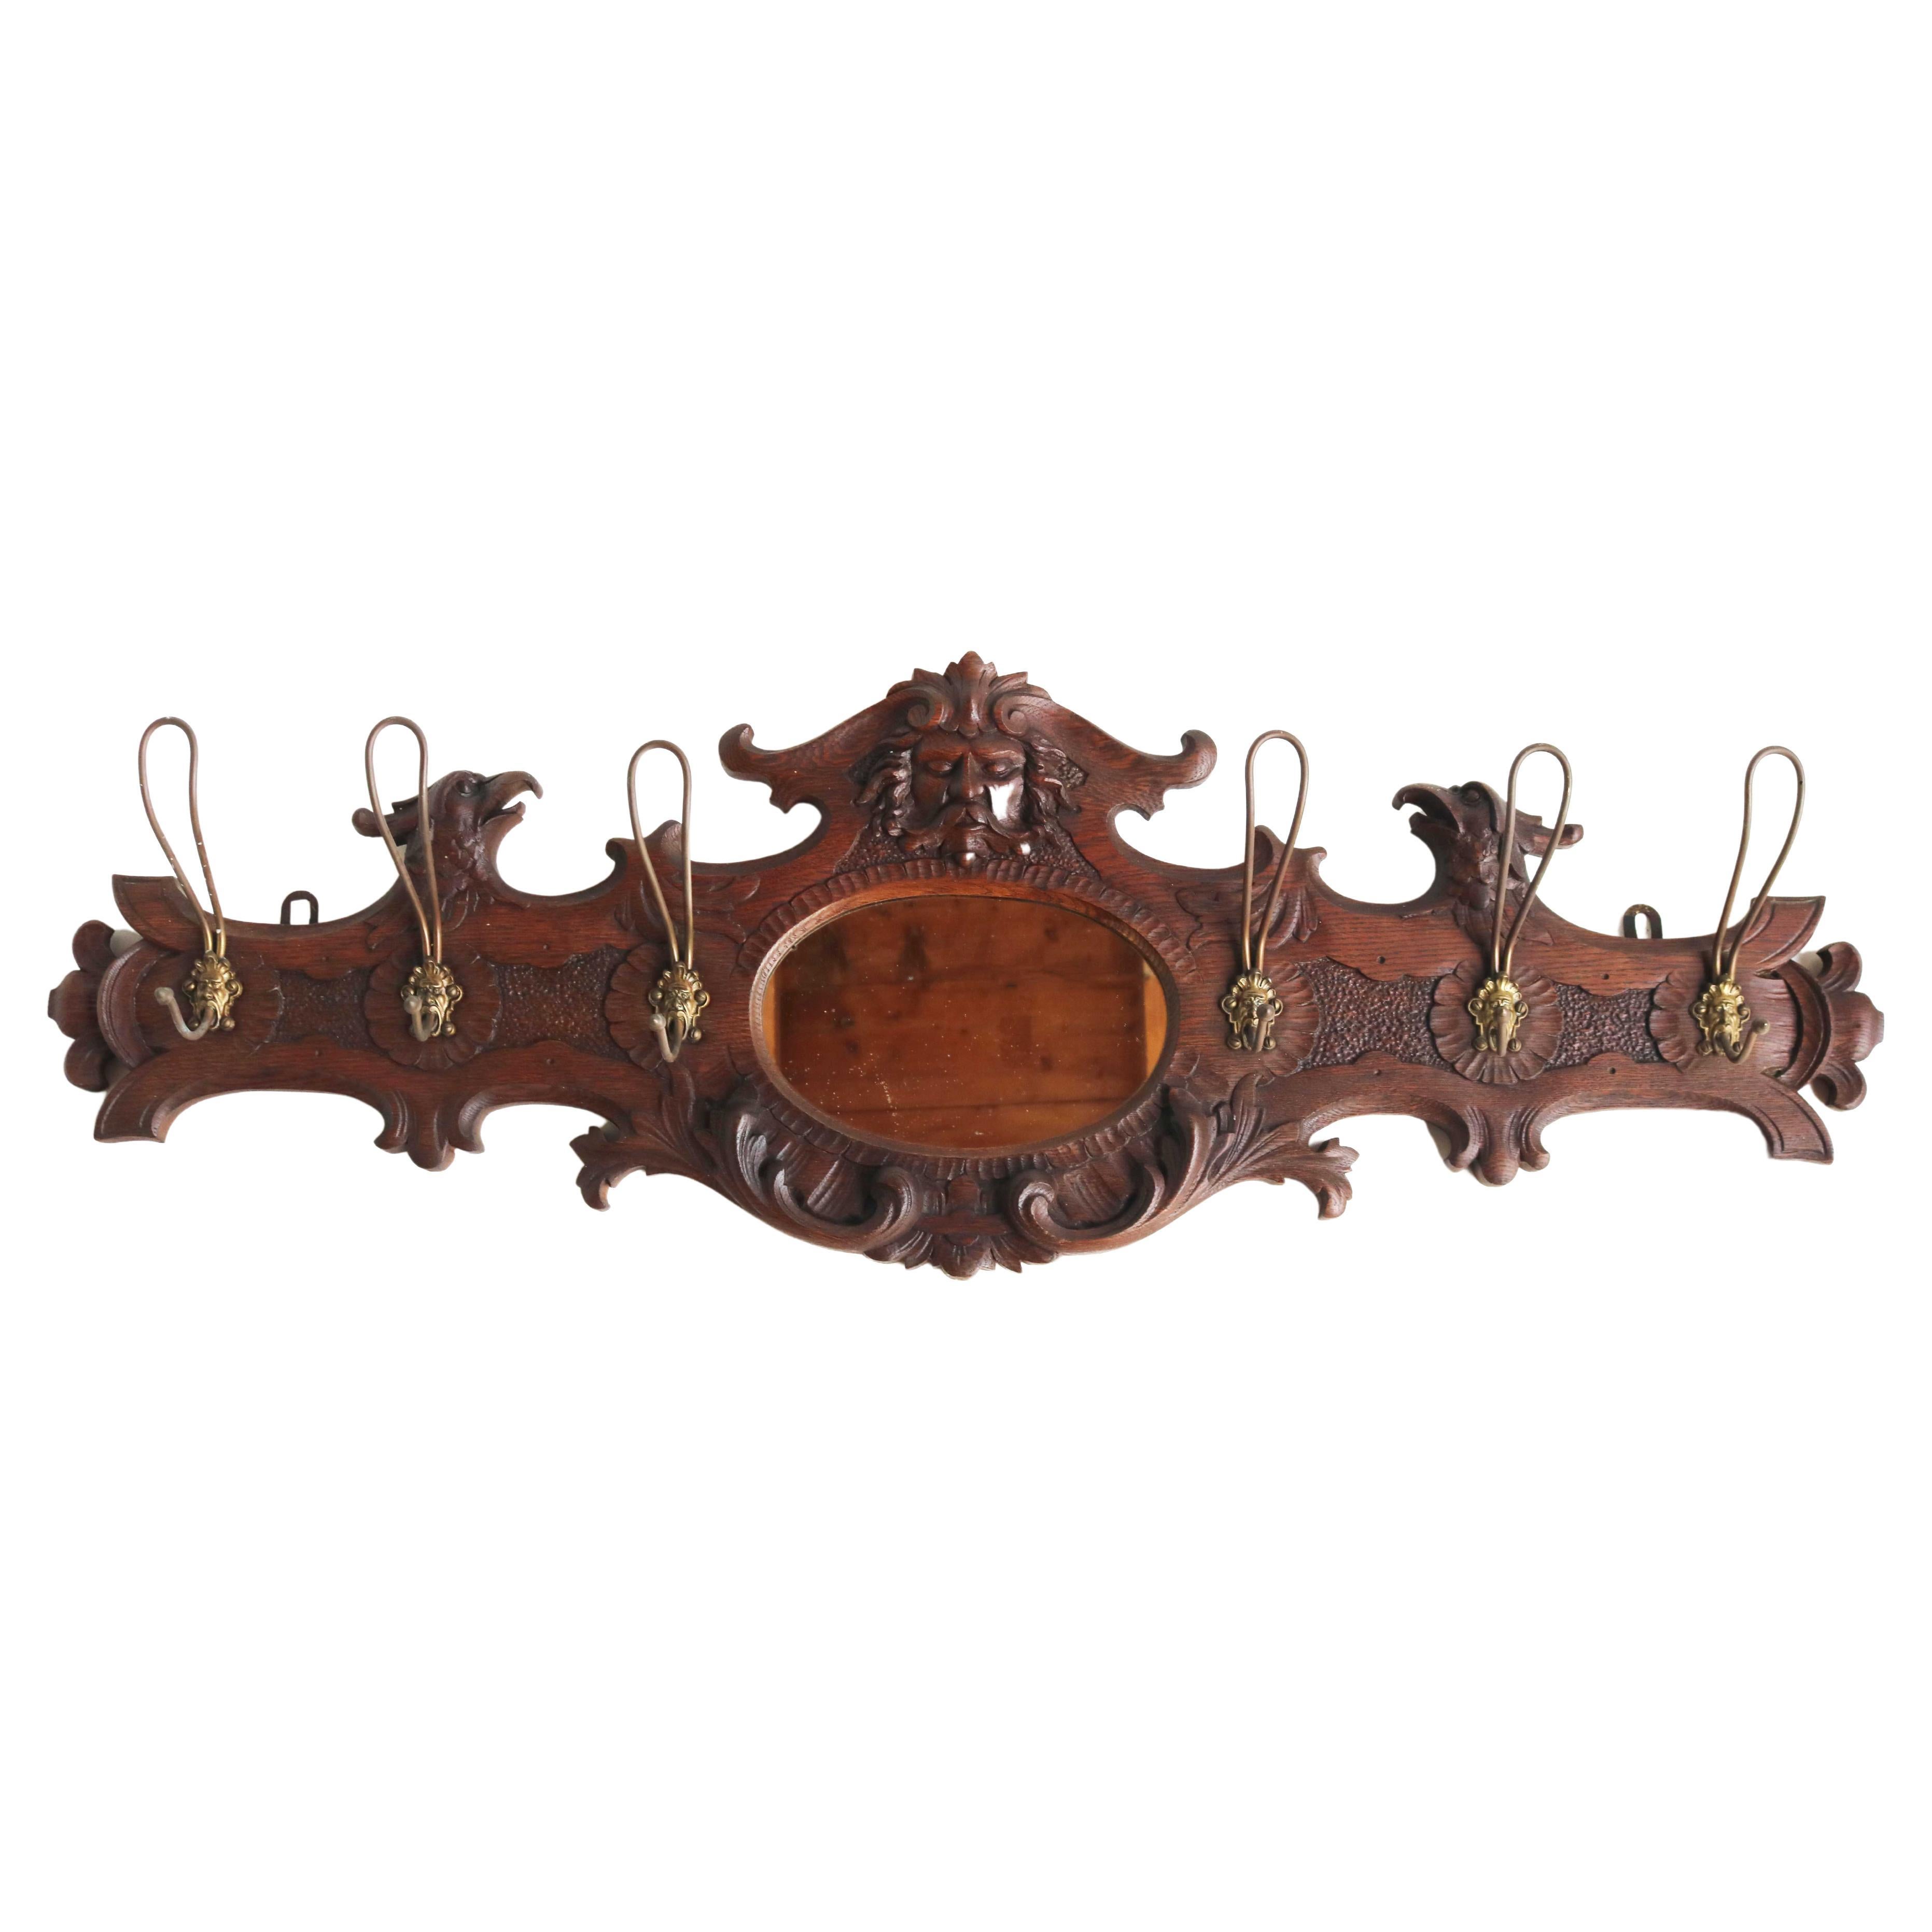 Laiton Porte-manteaux ancien en bois sculpté avec masque et aigle, miroir, crochets en laiton 19ème siècle  en vente